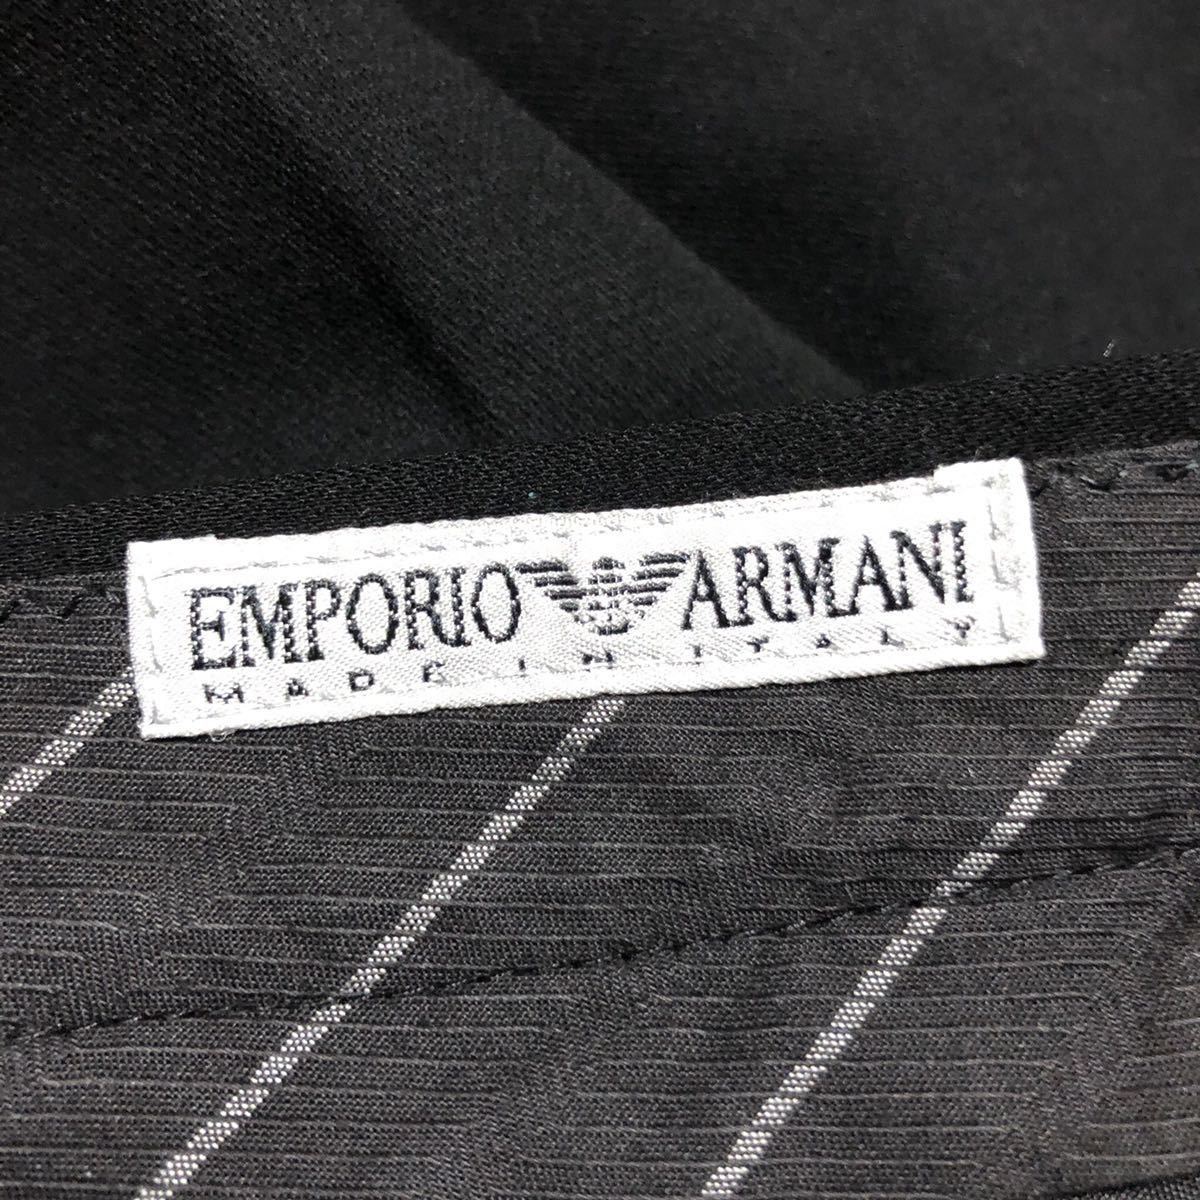 EMPORIO ARMANI エンポリオ アルマーニ イタリア製 上下 セットアップ ダブル スーツ パンツ 黒 5